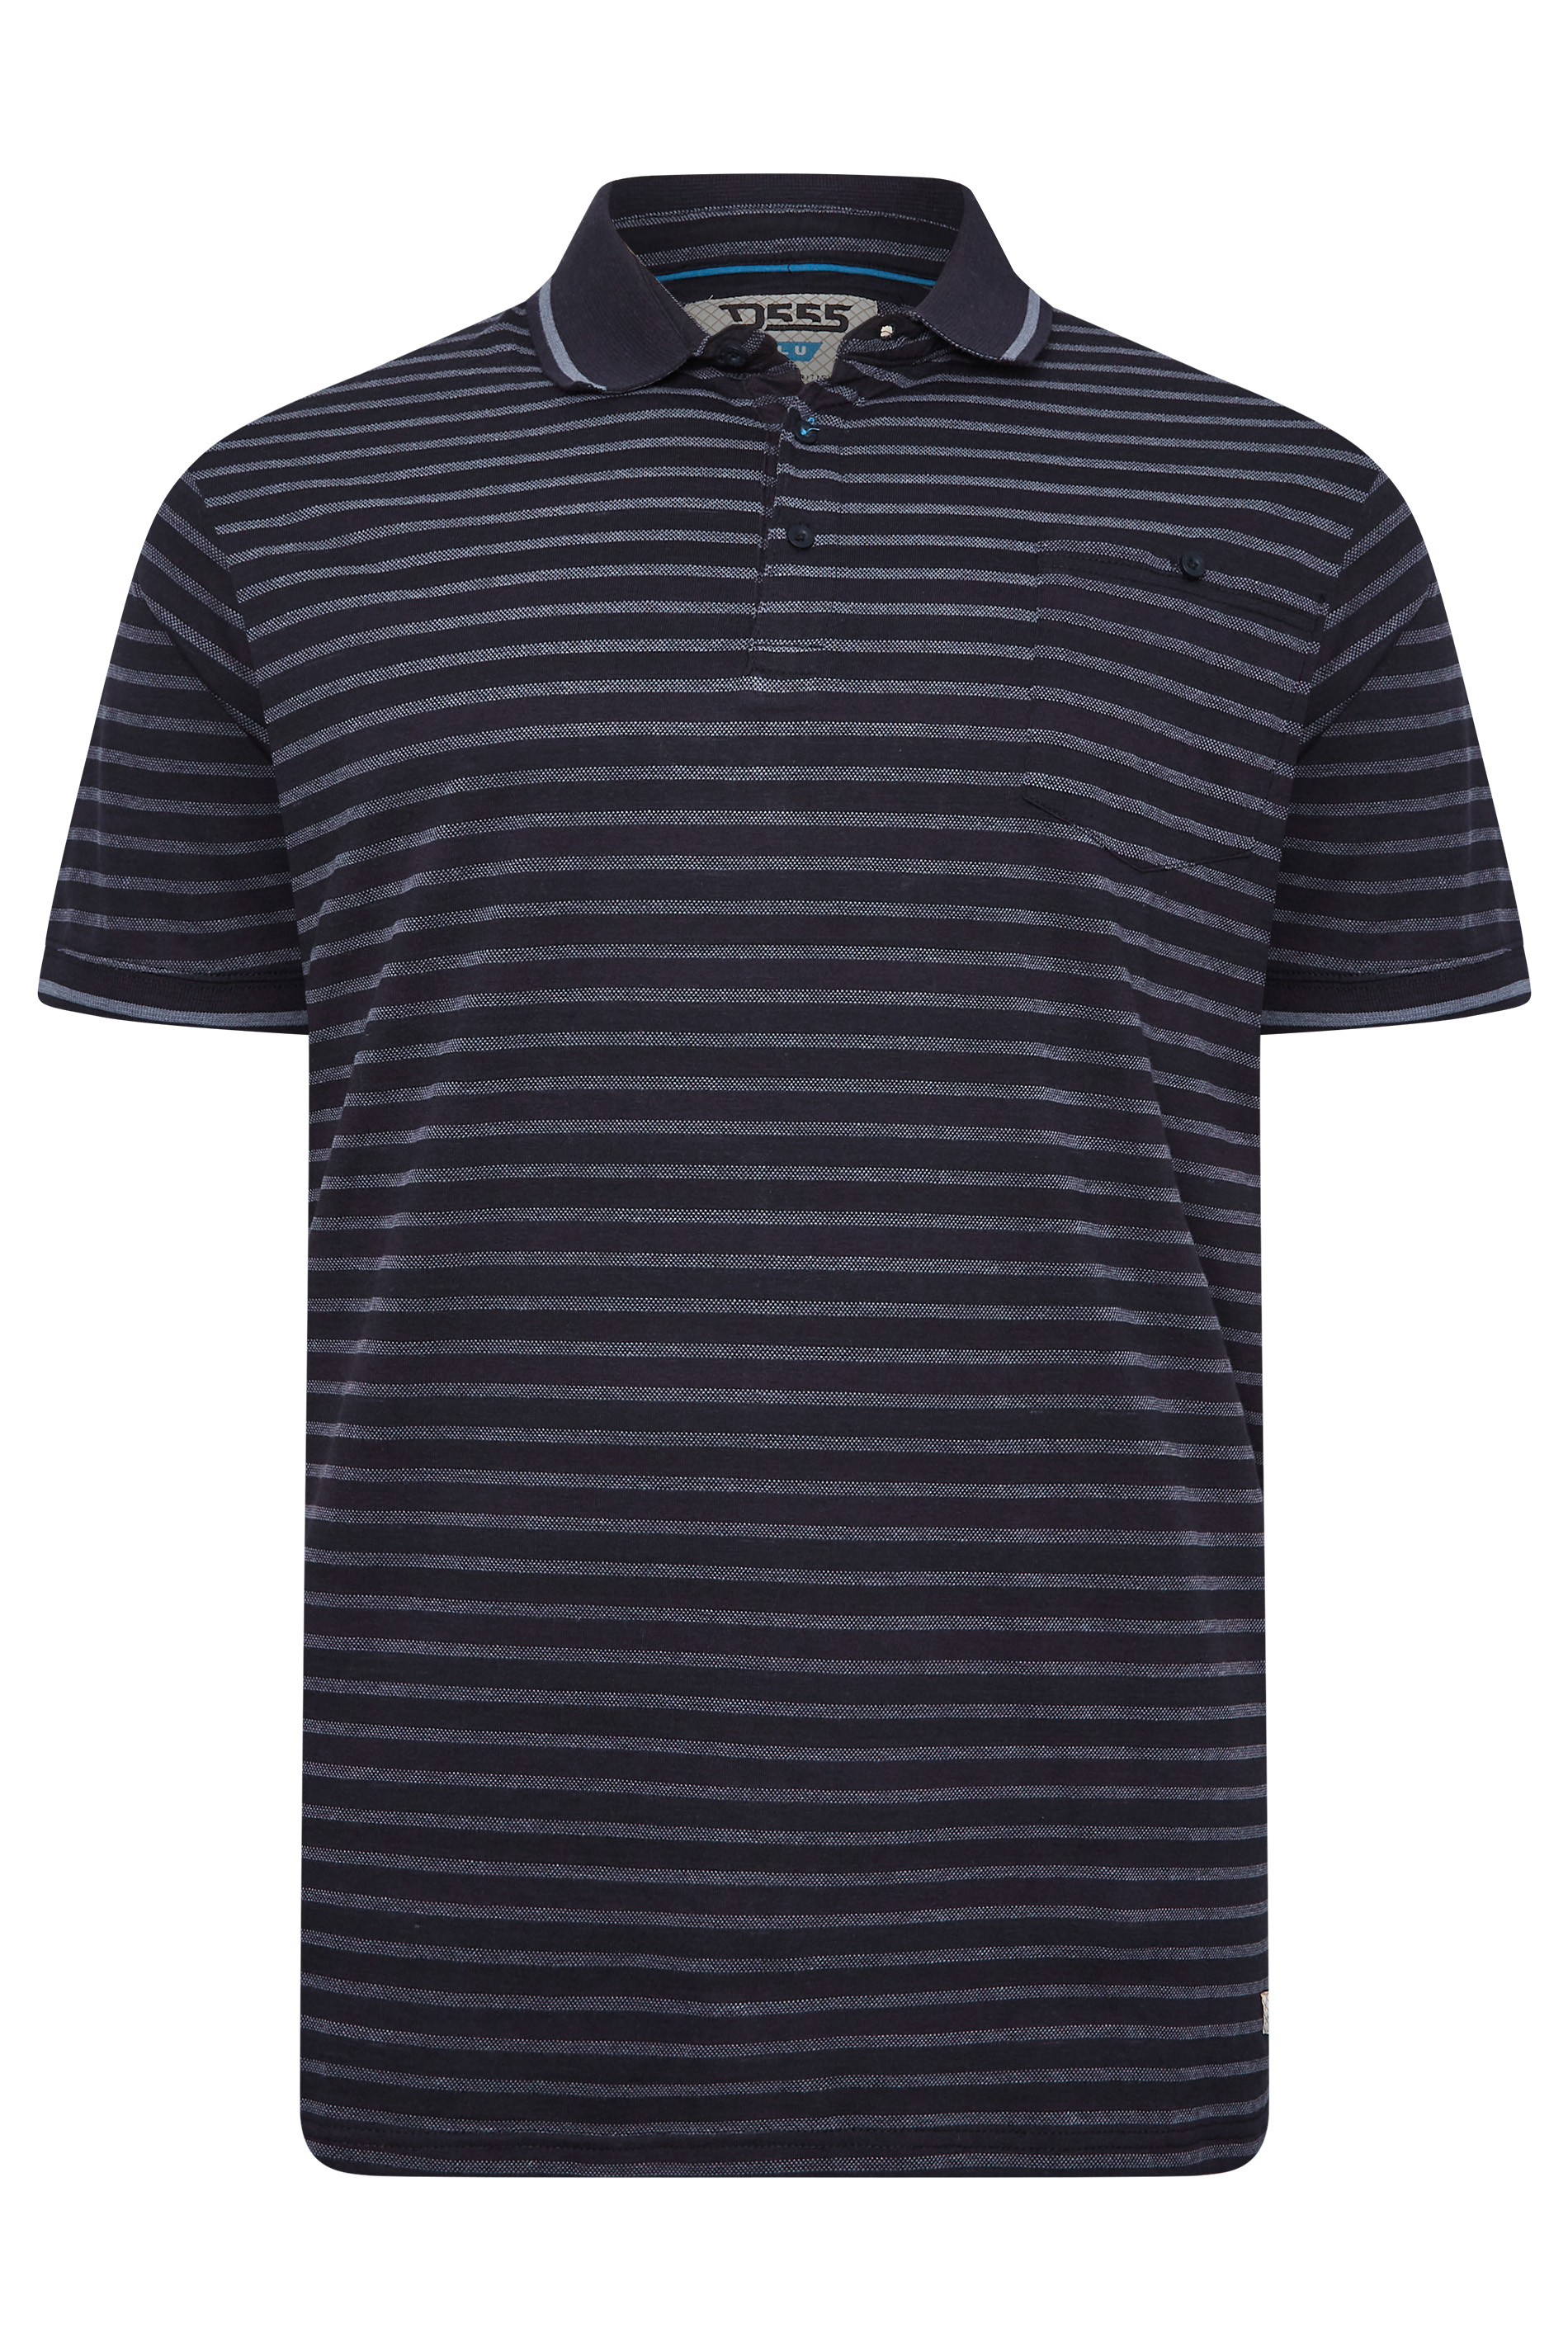 D555 Big & Tall Black Stripe Polo Shirt | BadRhino 2